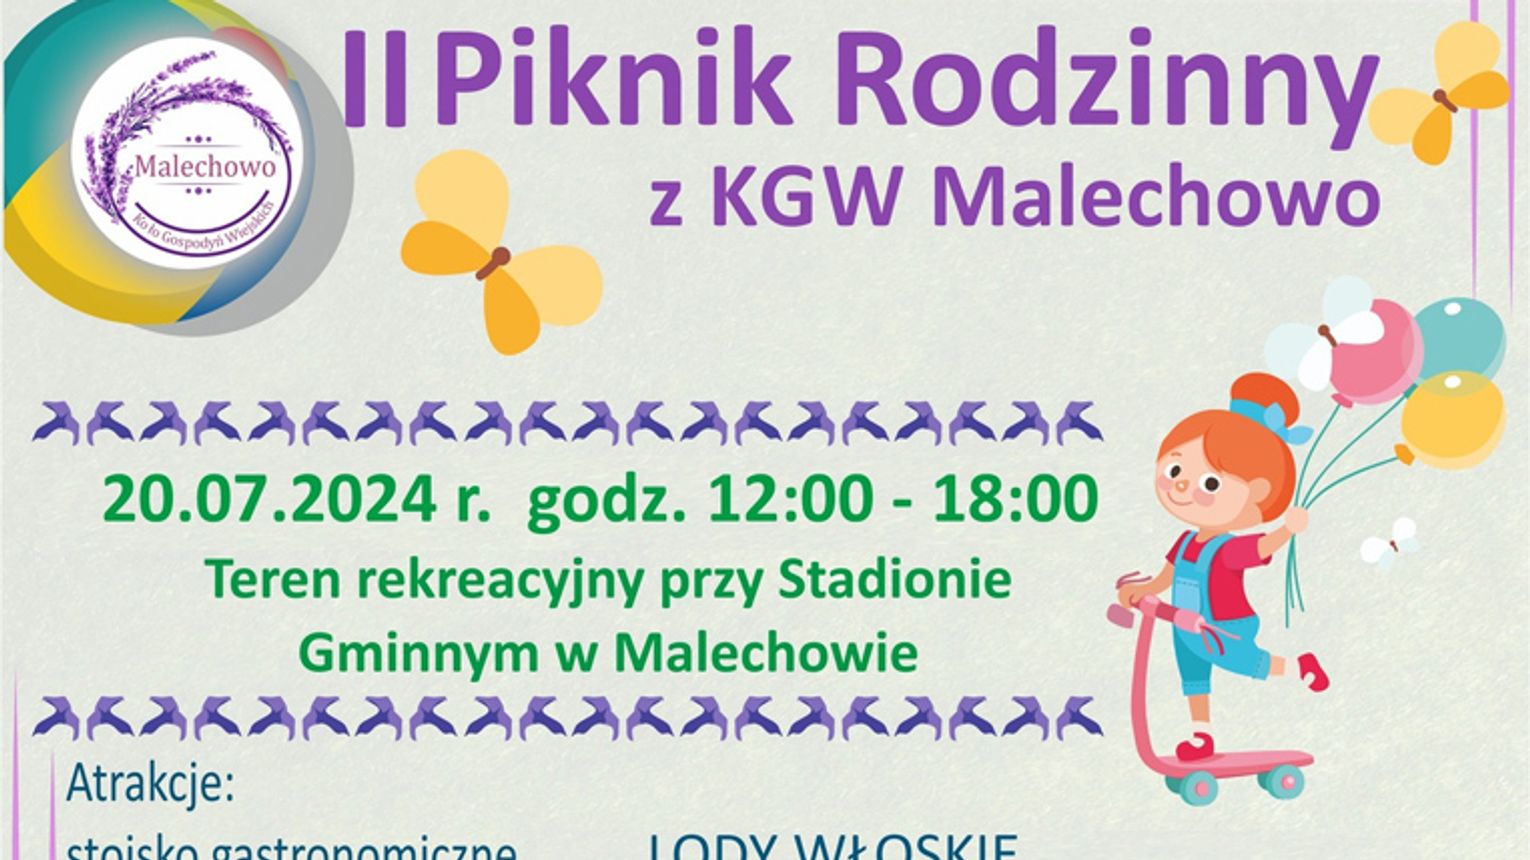 Malechowo: Piknik rodzinny z KGW Malechowo